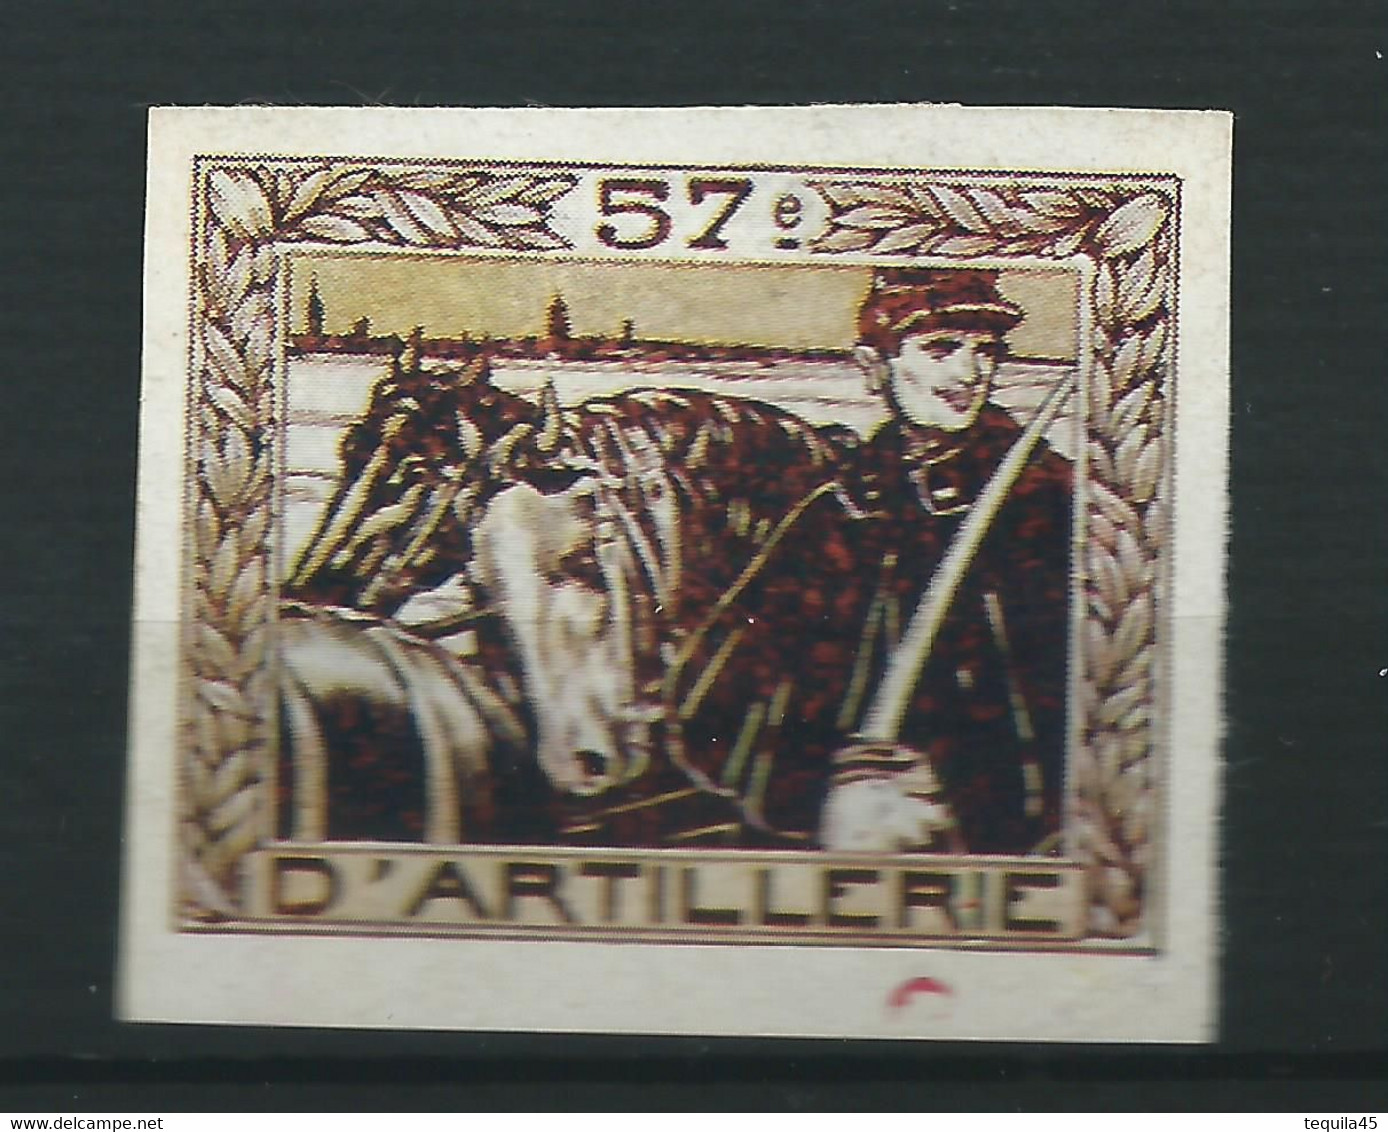 Rare FRANCE VIGNETTE DELANDRE 57 éme Régiment Artillerie WWI Ww1 Cinderella Poster Stamp - Vignettes Militaires